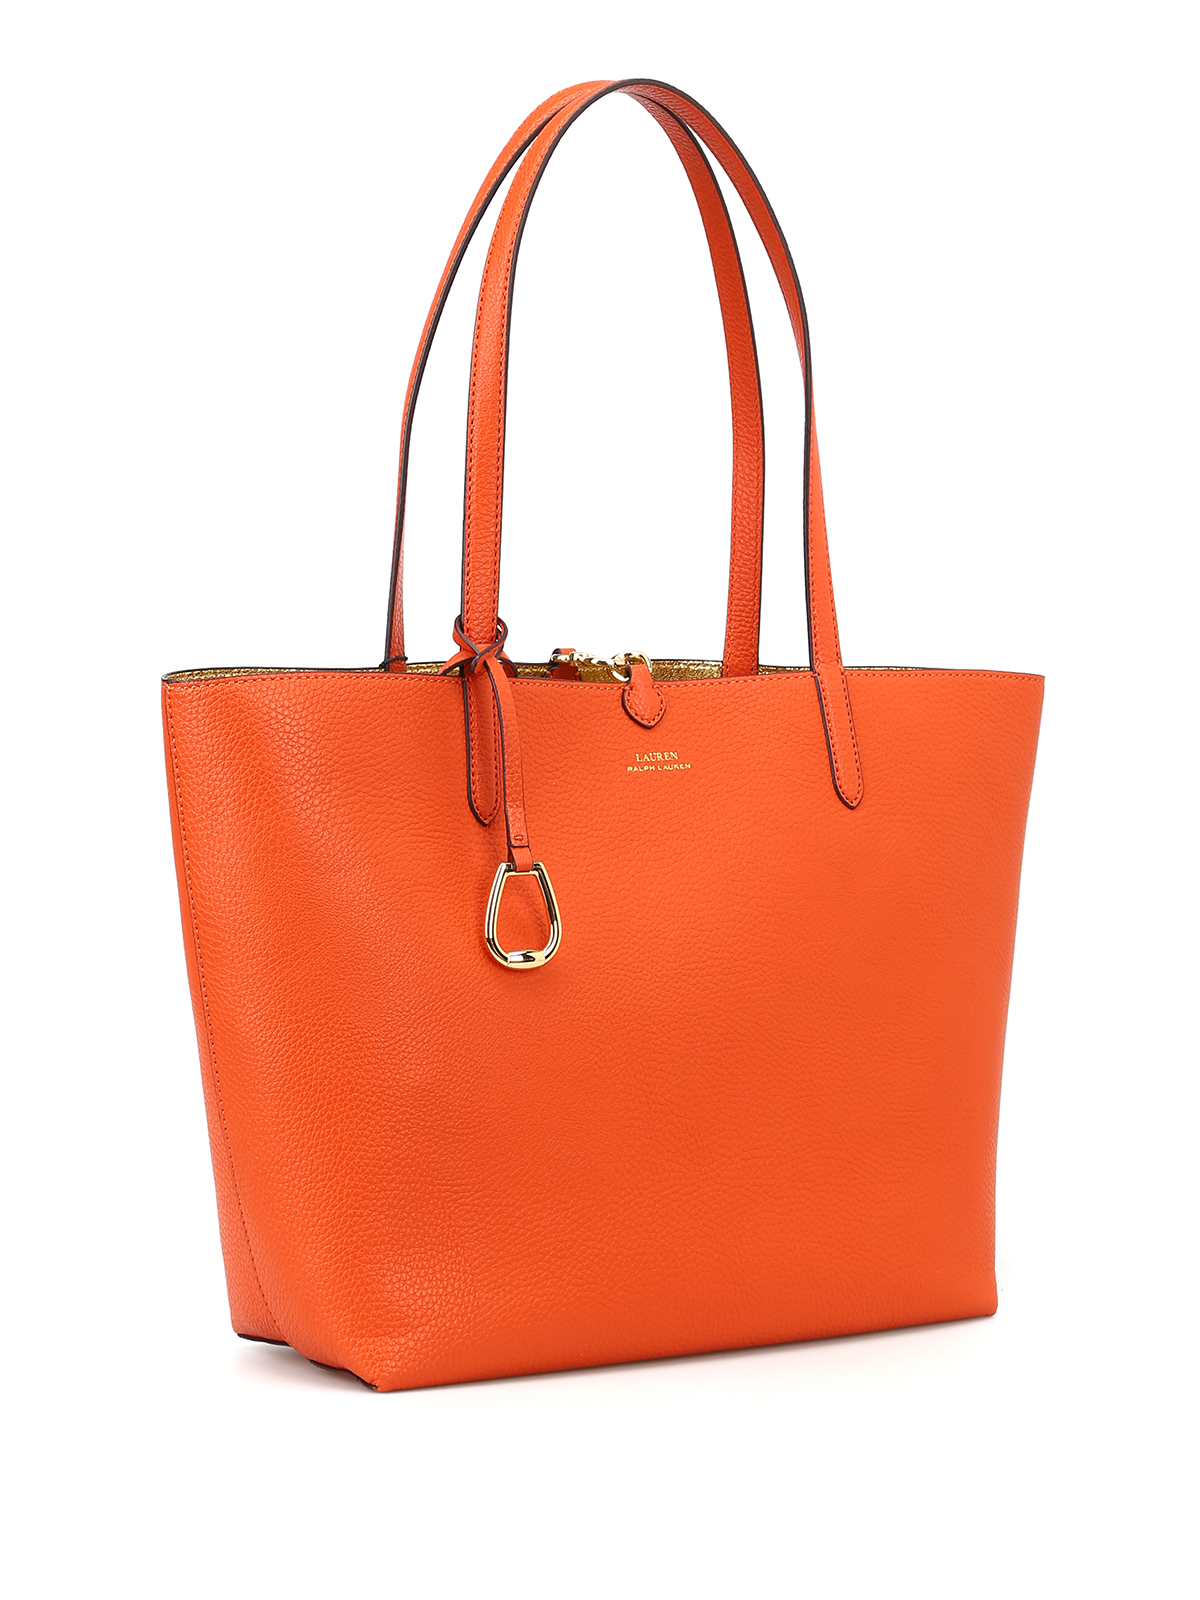 Totes bags Ralph Lauren - Merrimack orange and gold reversible tote ...